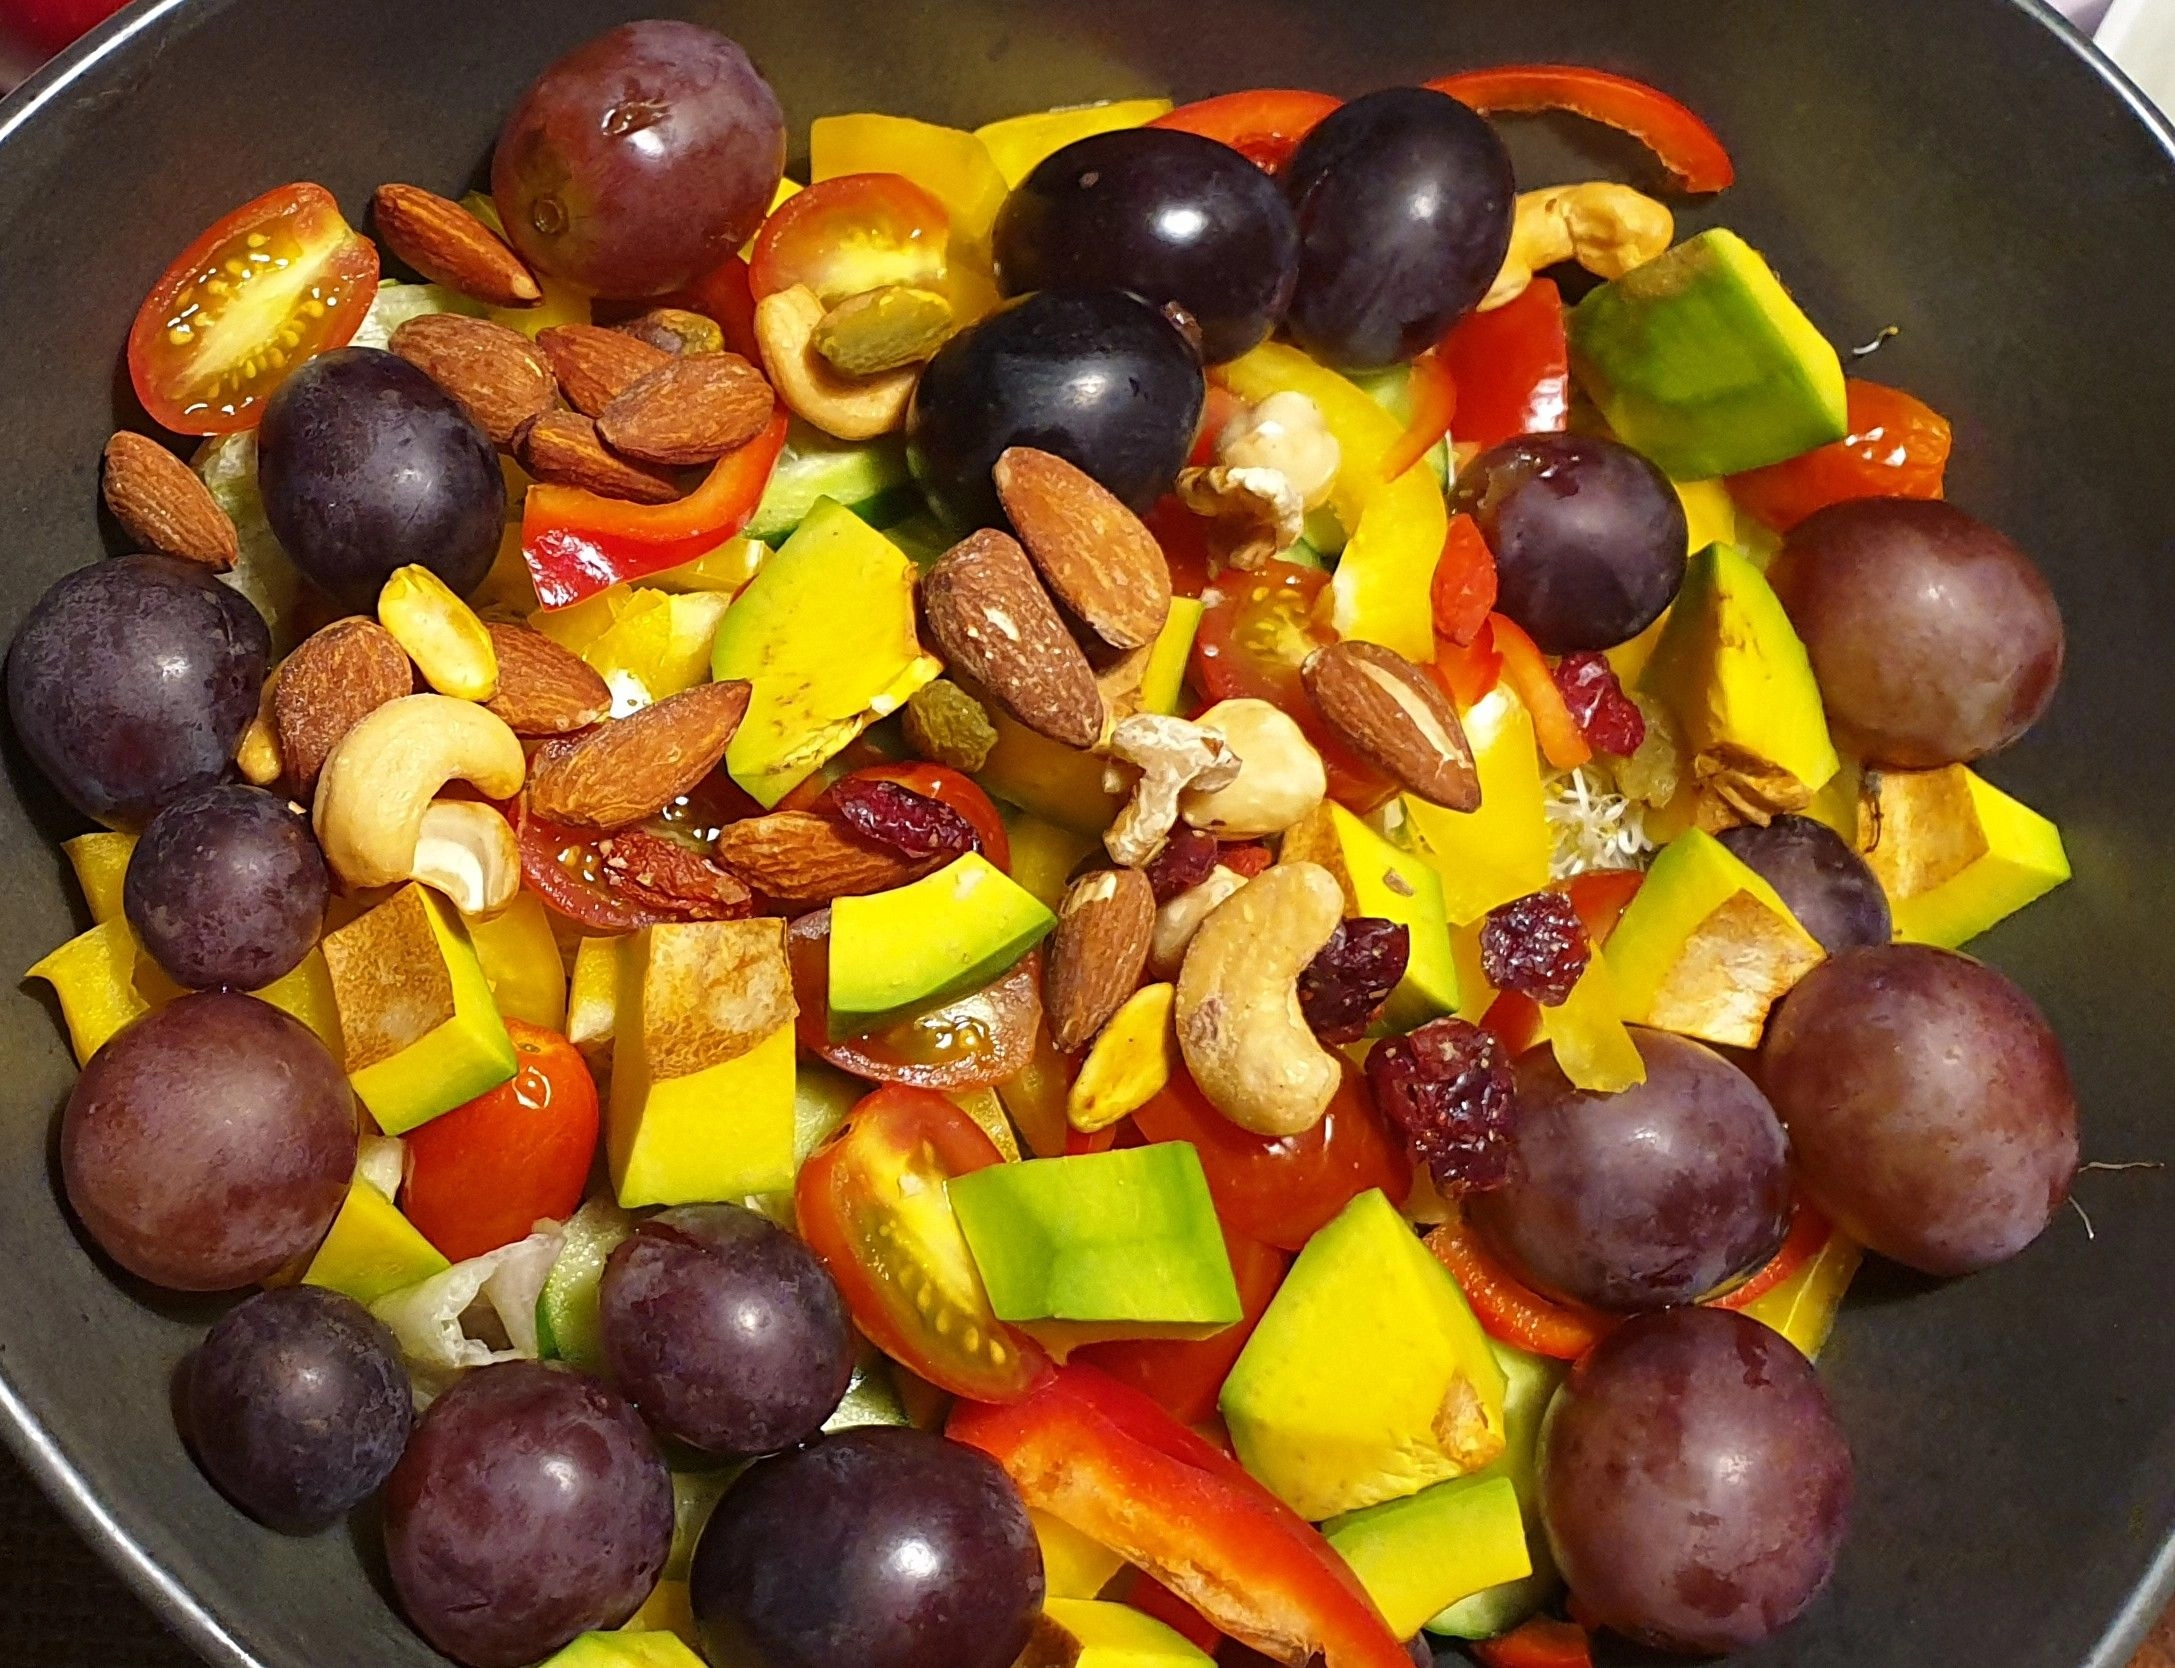 從食物中也可以獲取葉酸，許多蔬菜水果富含葉酸，但要避免烹煮過度。